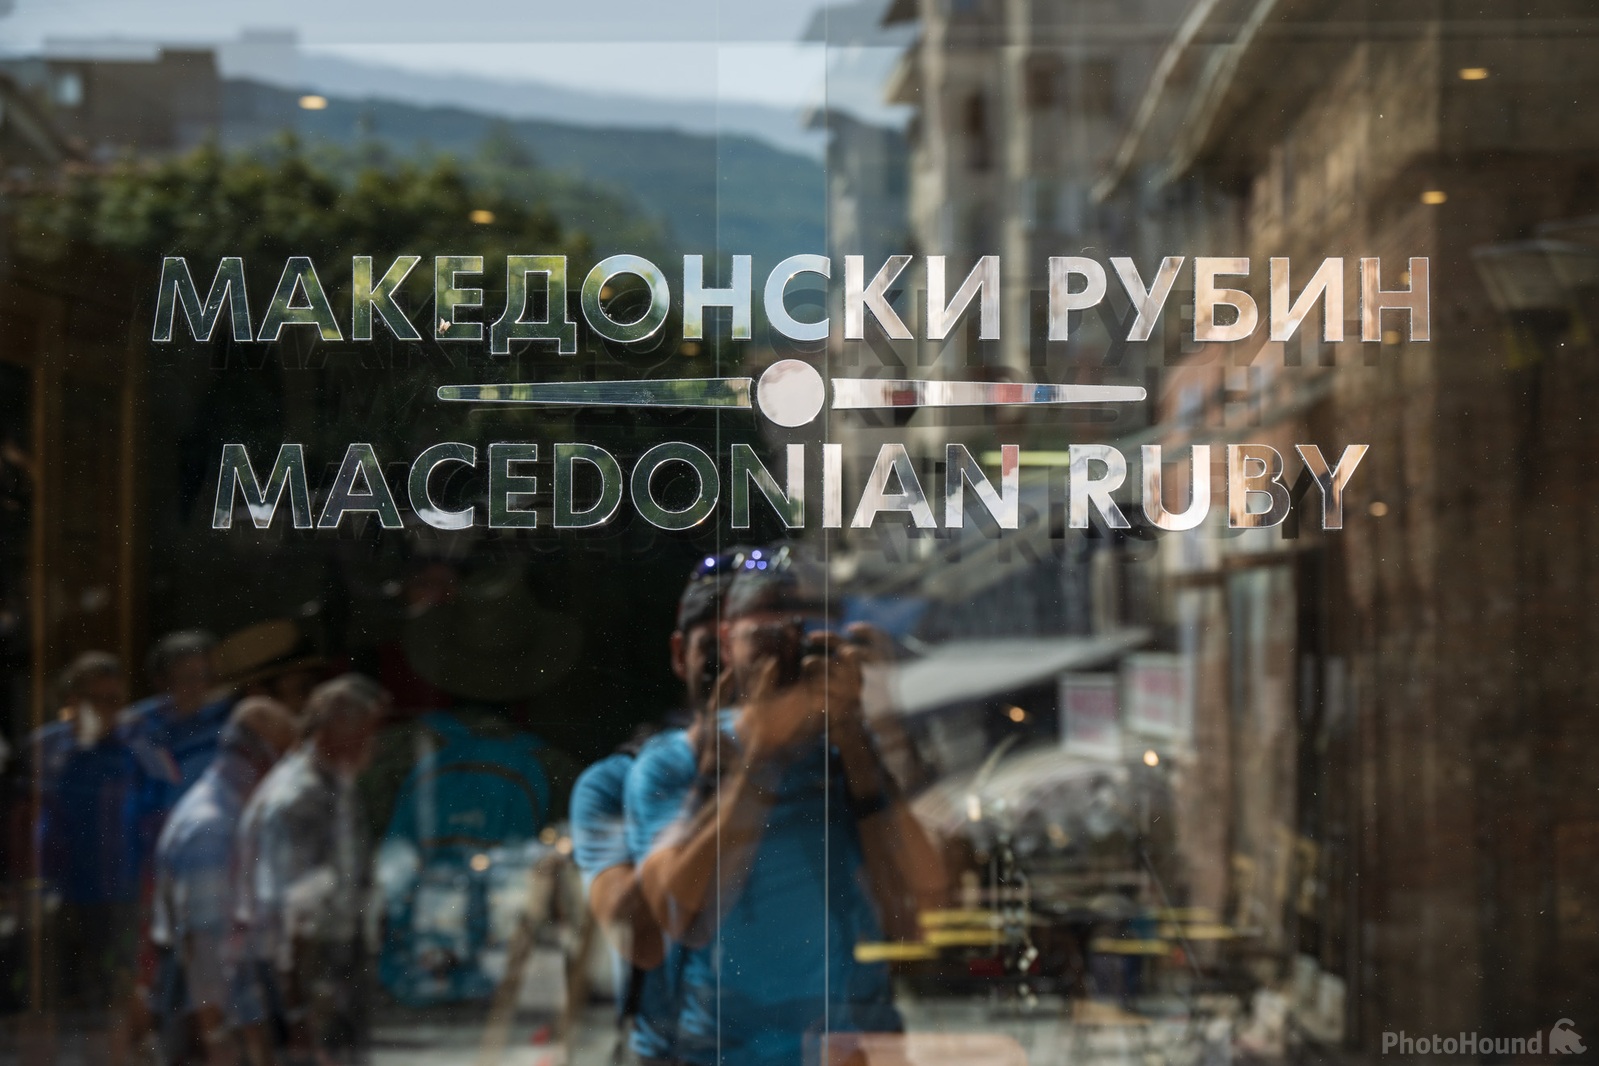 Image of Macedonian Ruby (Work)Shop by Luka Esenko